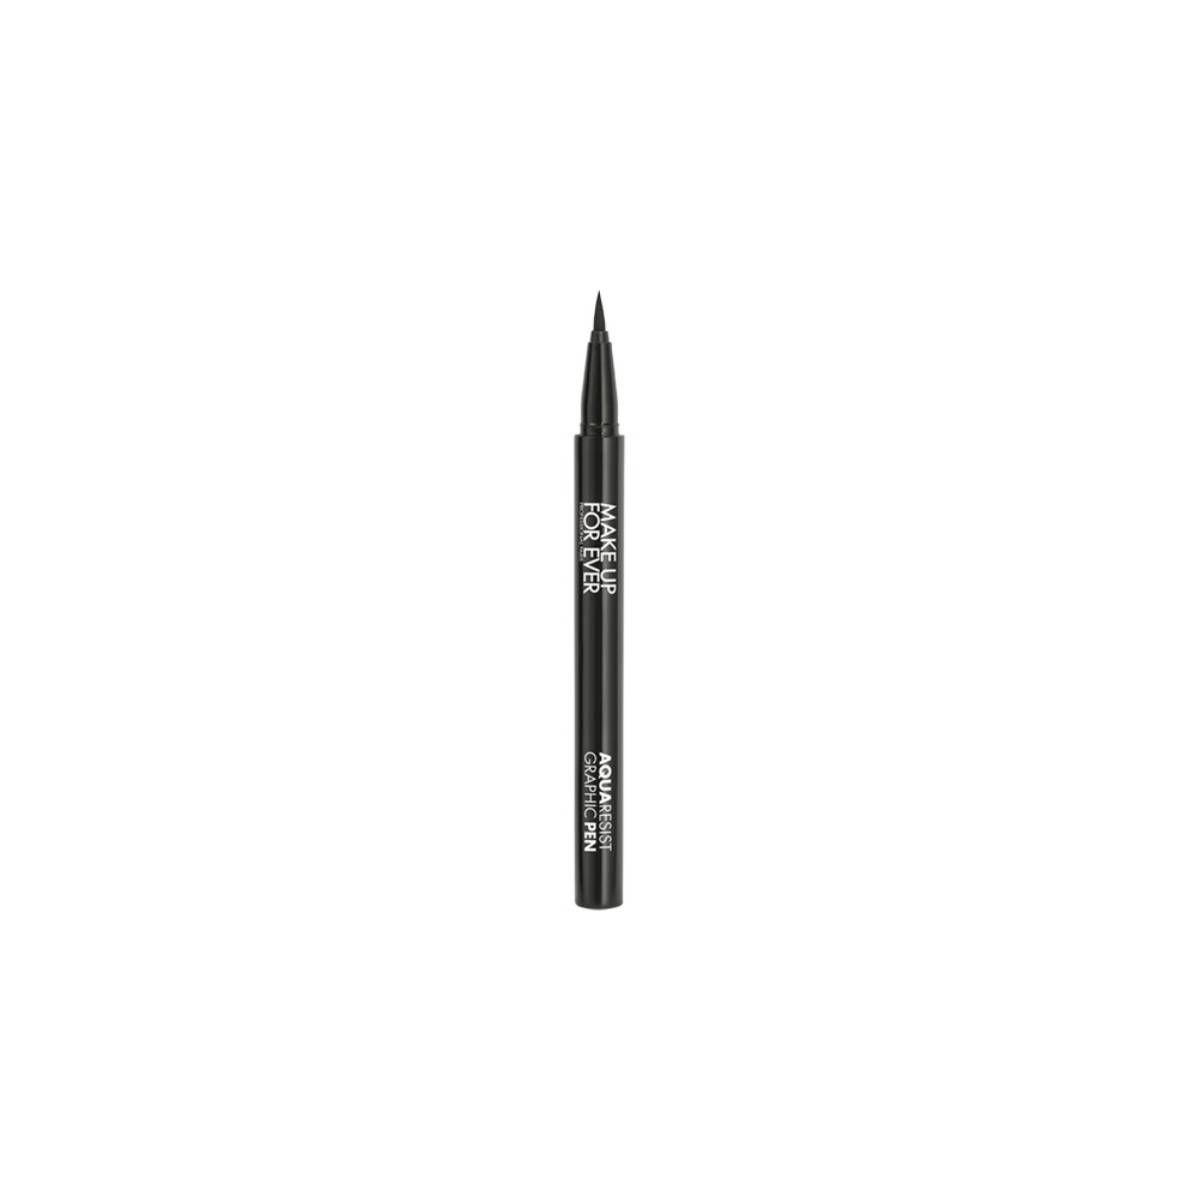 Aqua Resist Graphic pen eyeliner, de Make Up For Ever